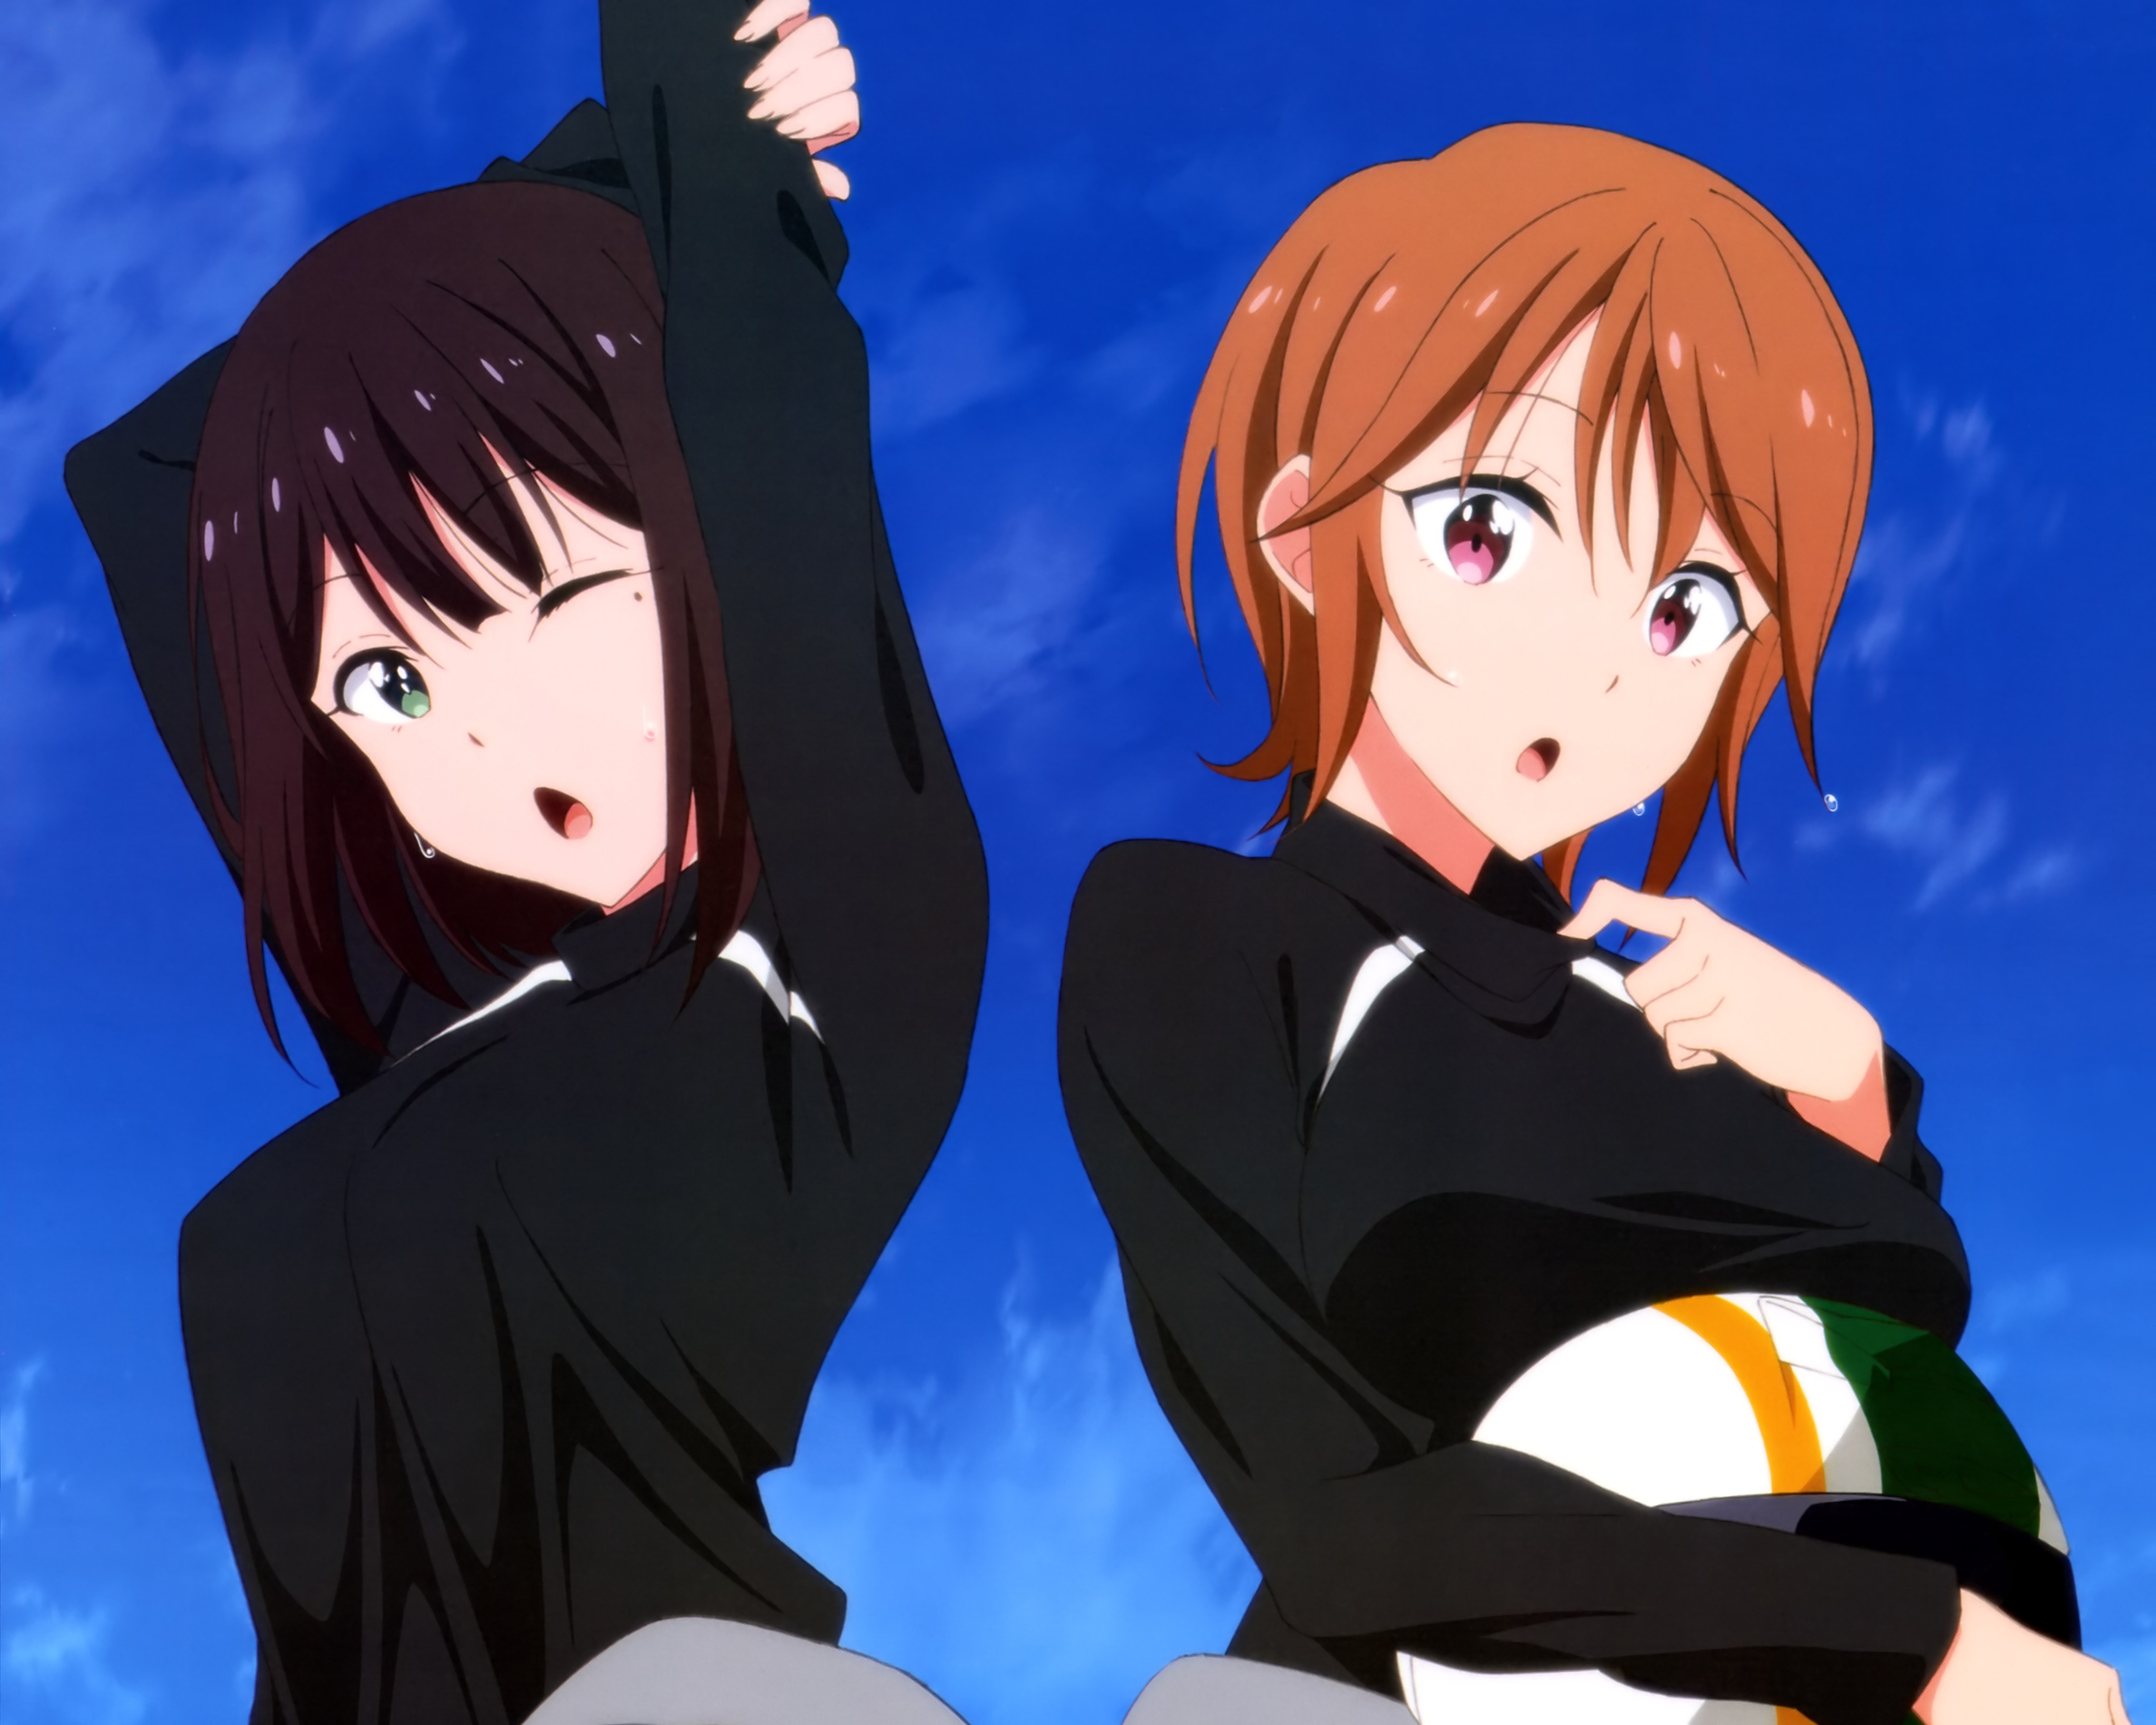 Tanahashi | Riding Anime Girls Wiki | Fandom